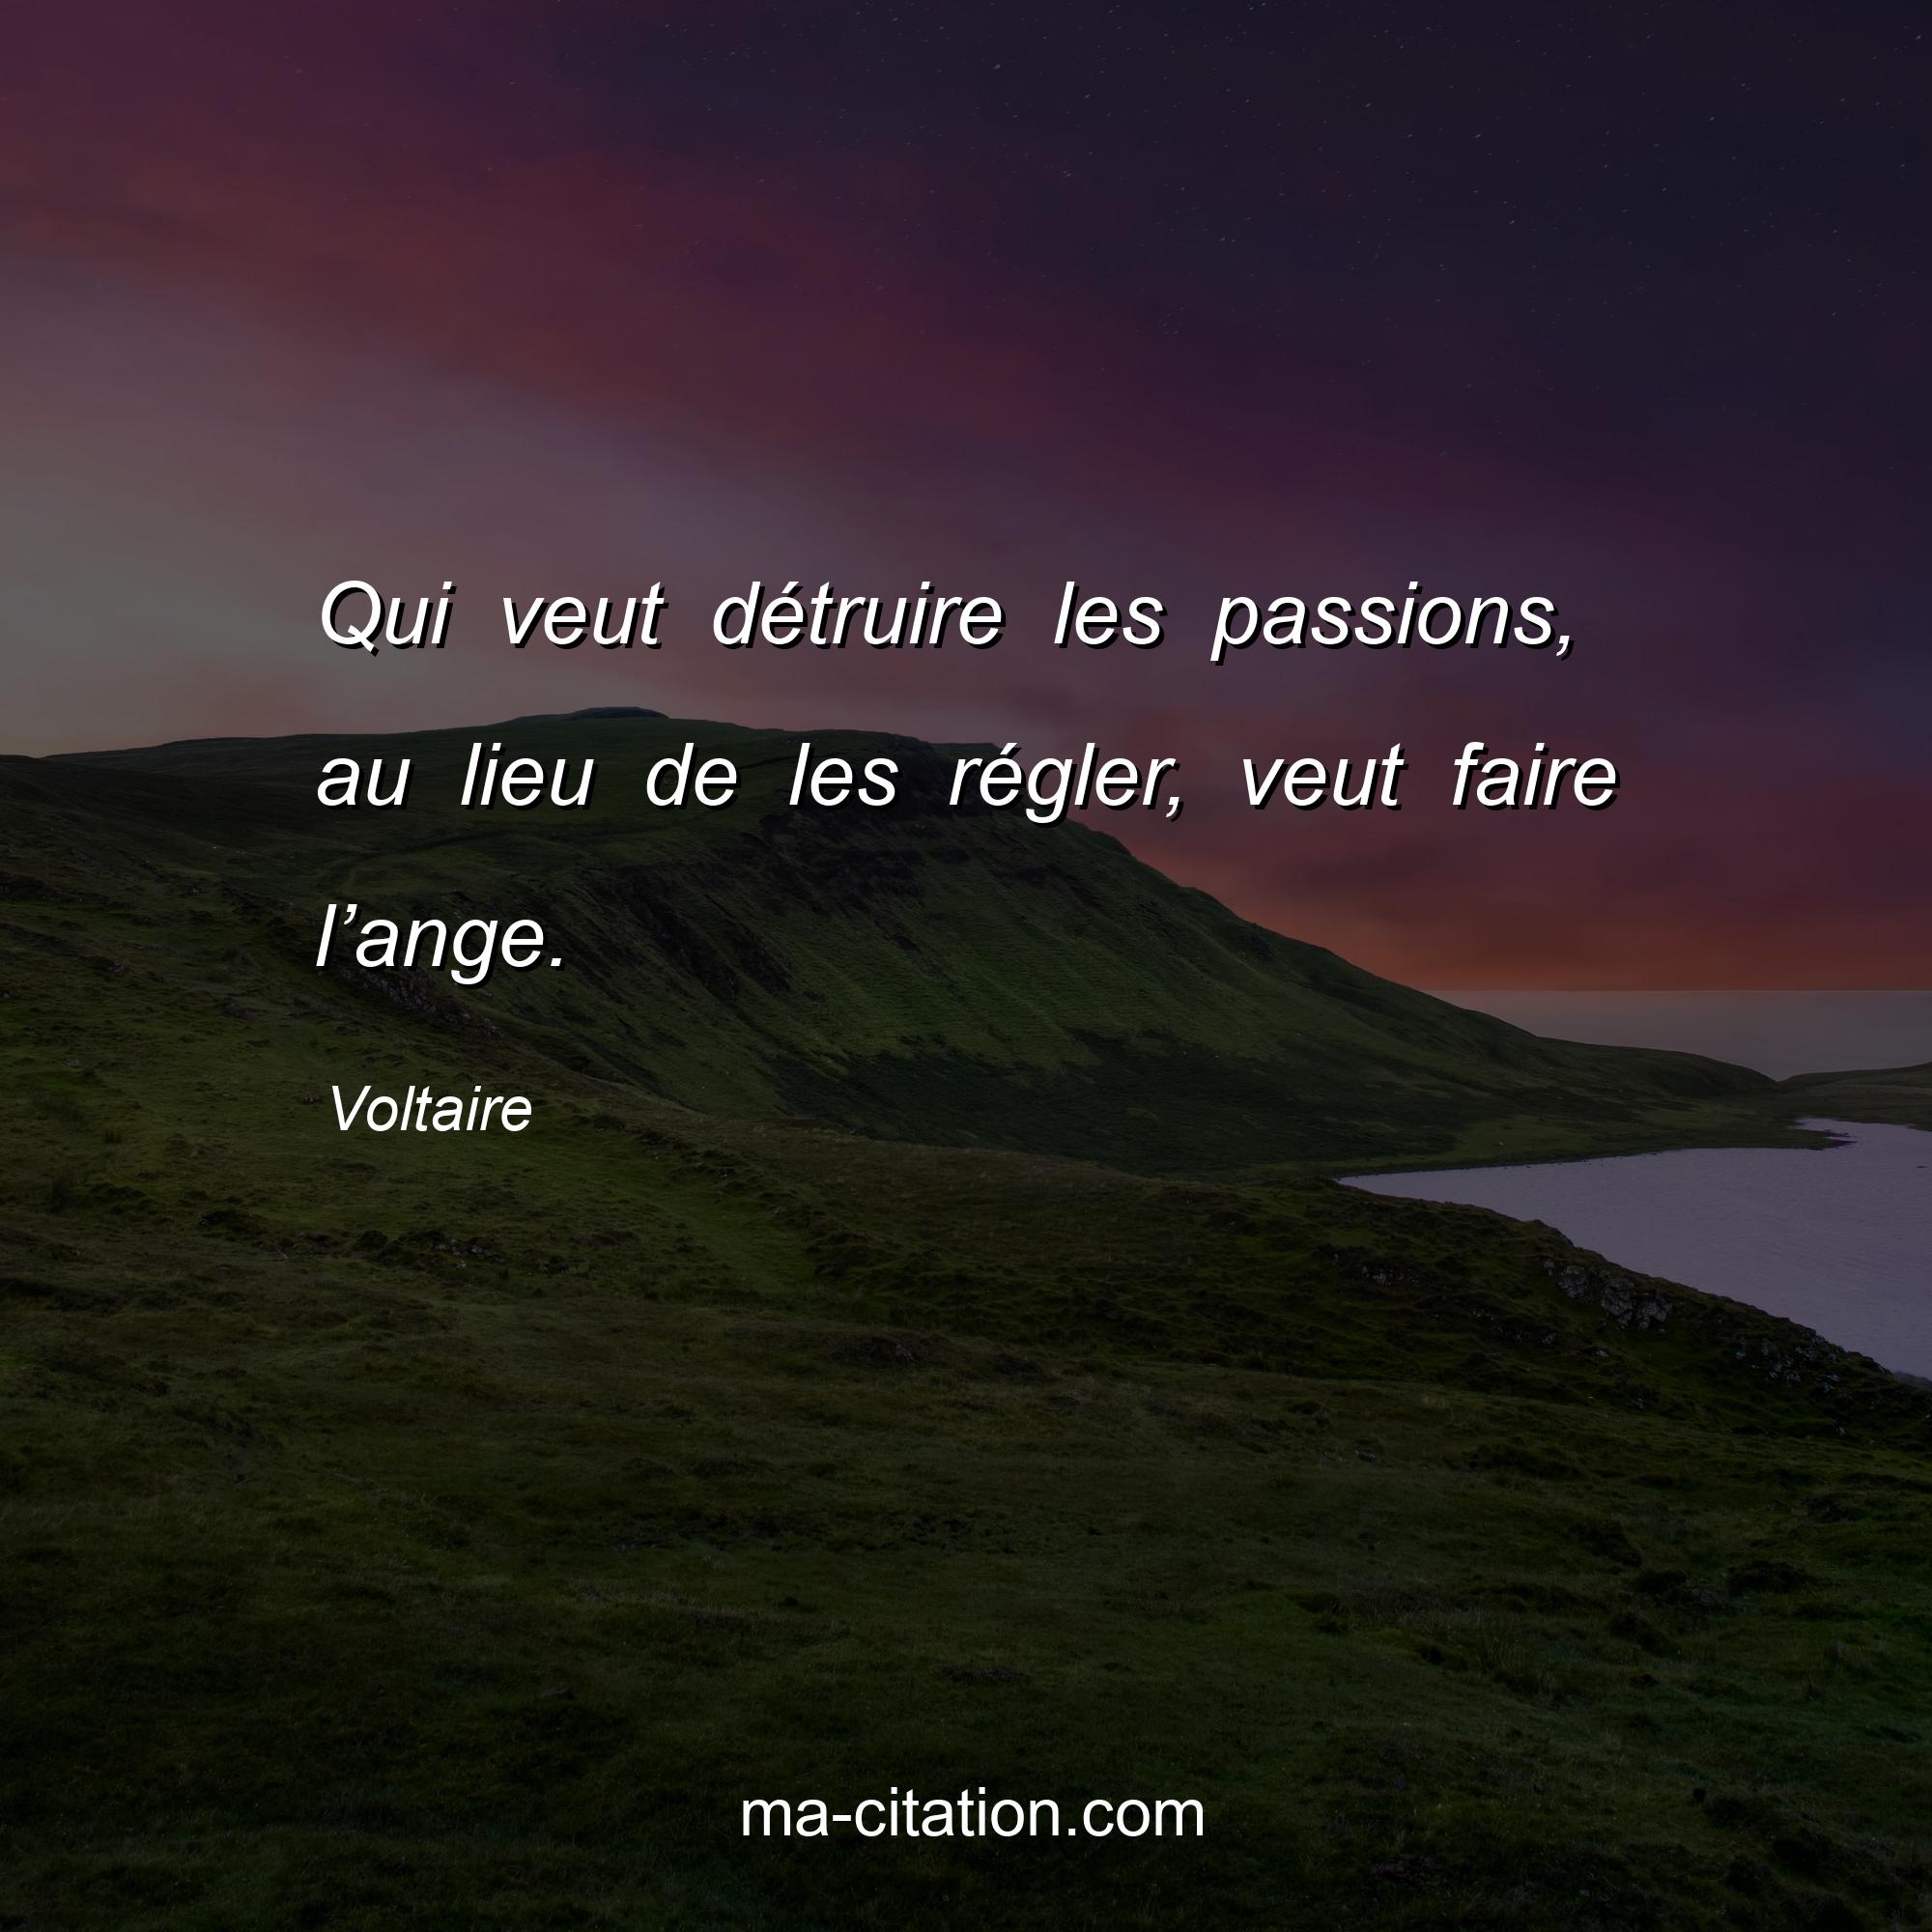 Voltaire : Qui veut détruire les passions, au lieu de les régler, veut faire l’ange.